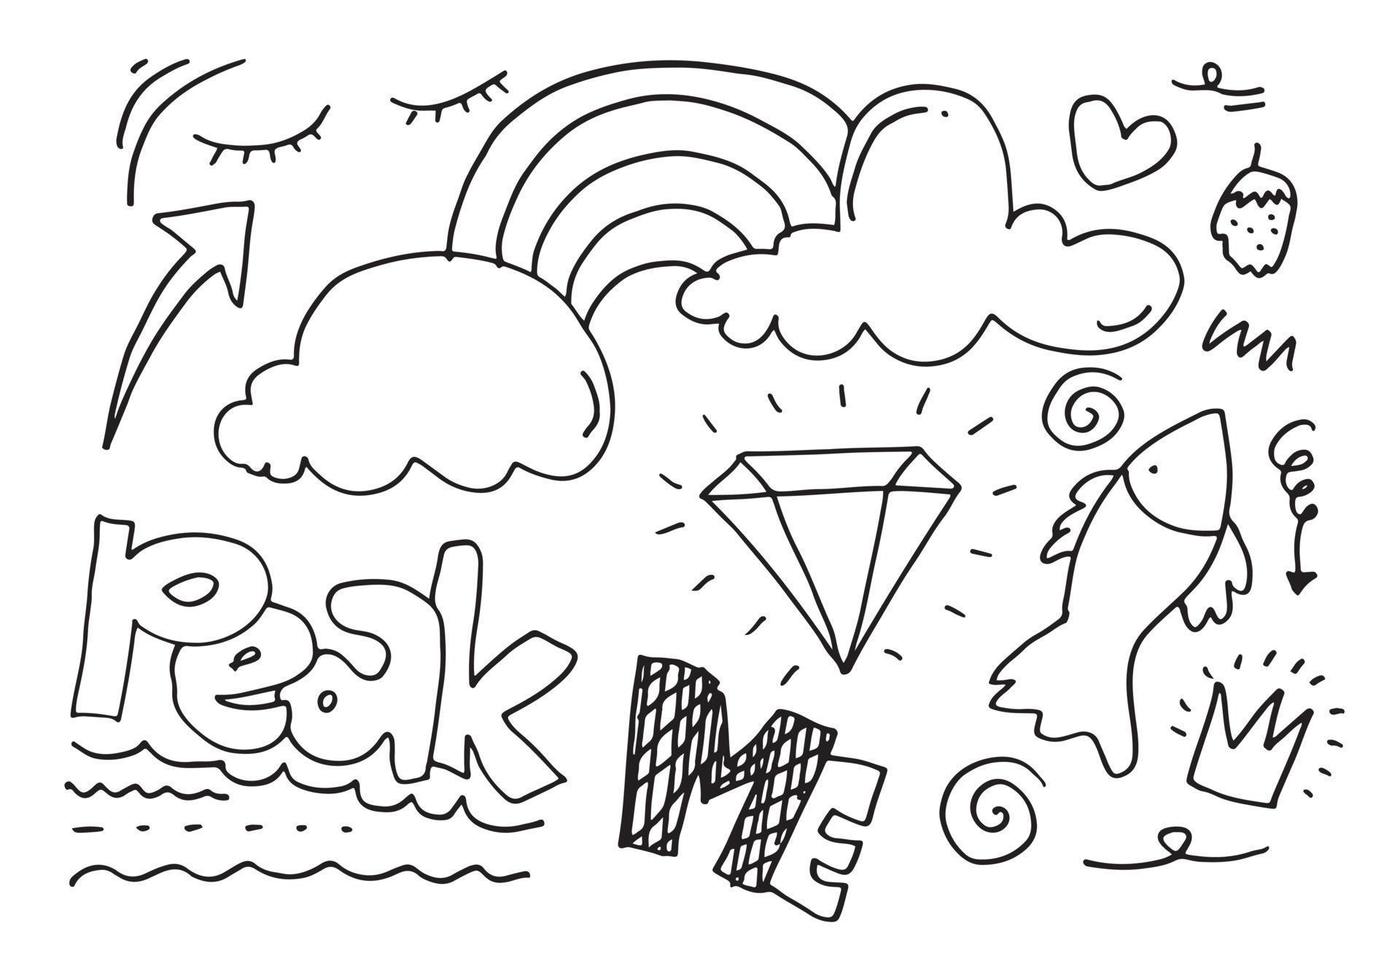 elementos de conjunto dibujados a mano, negros sobre fondo blanco. arco iris, flecha, rey, énfasis, nube, diamante, remolino, pescado, fresa y texto máximo para el diseño conceptual. vector